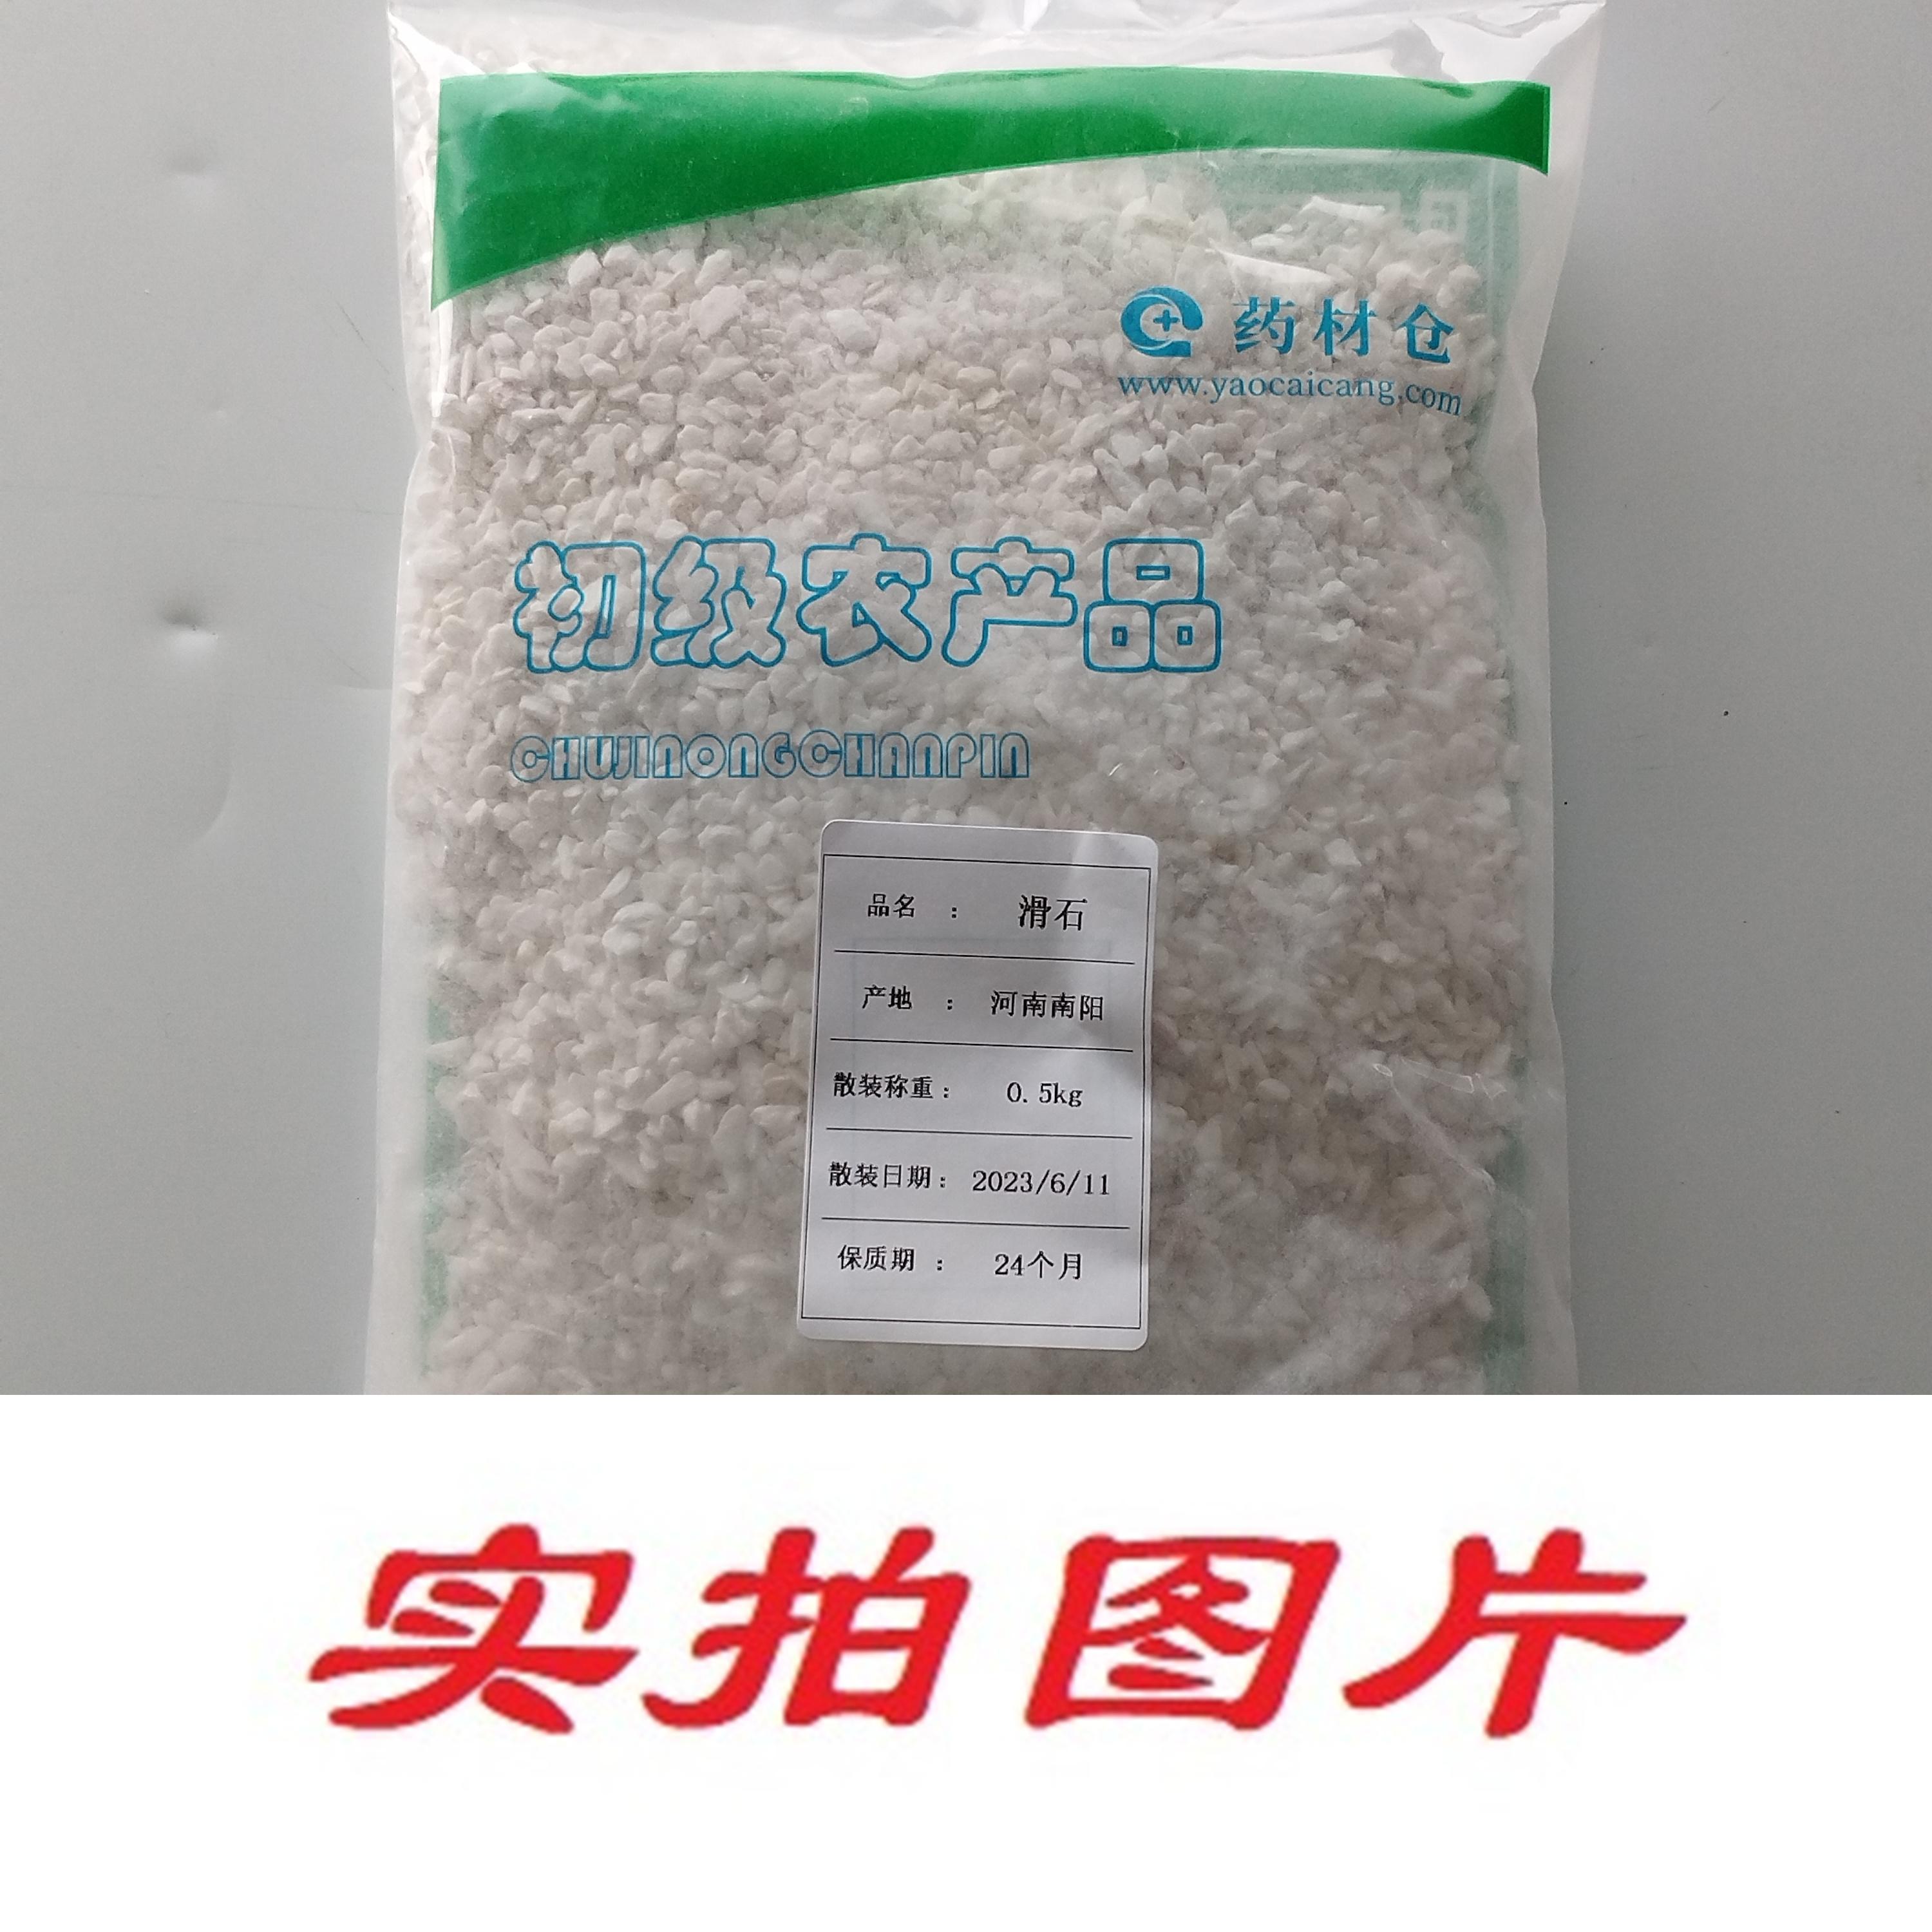 【】滑石0.5kg-农副产品